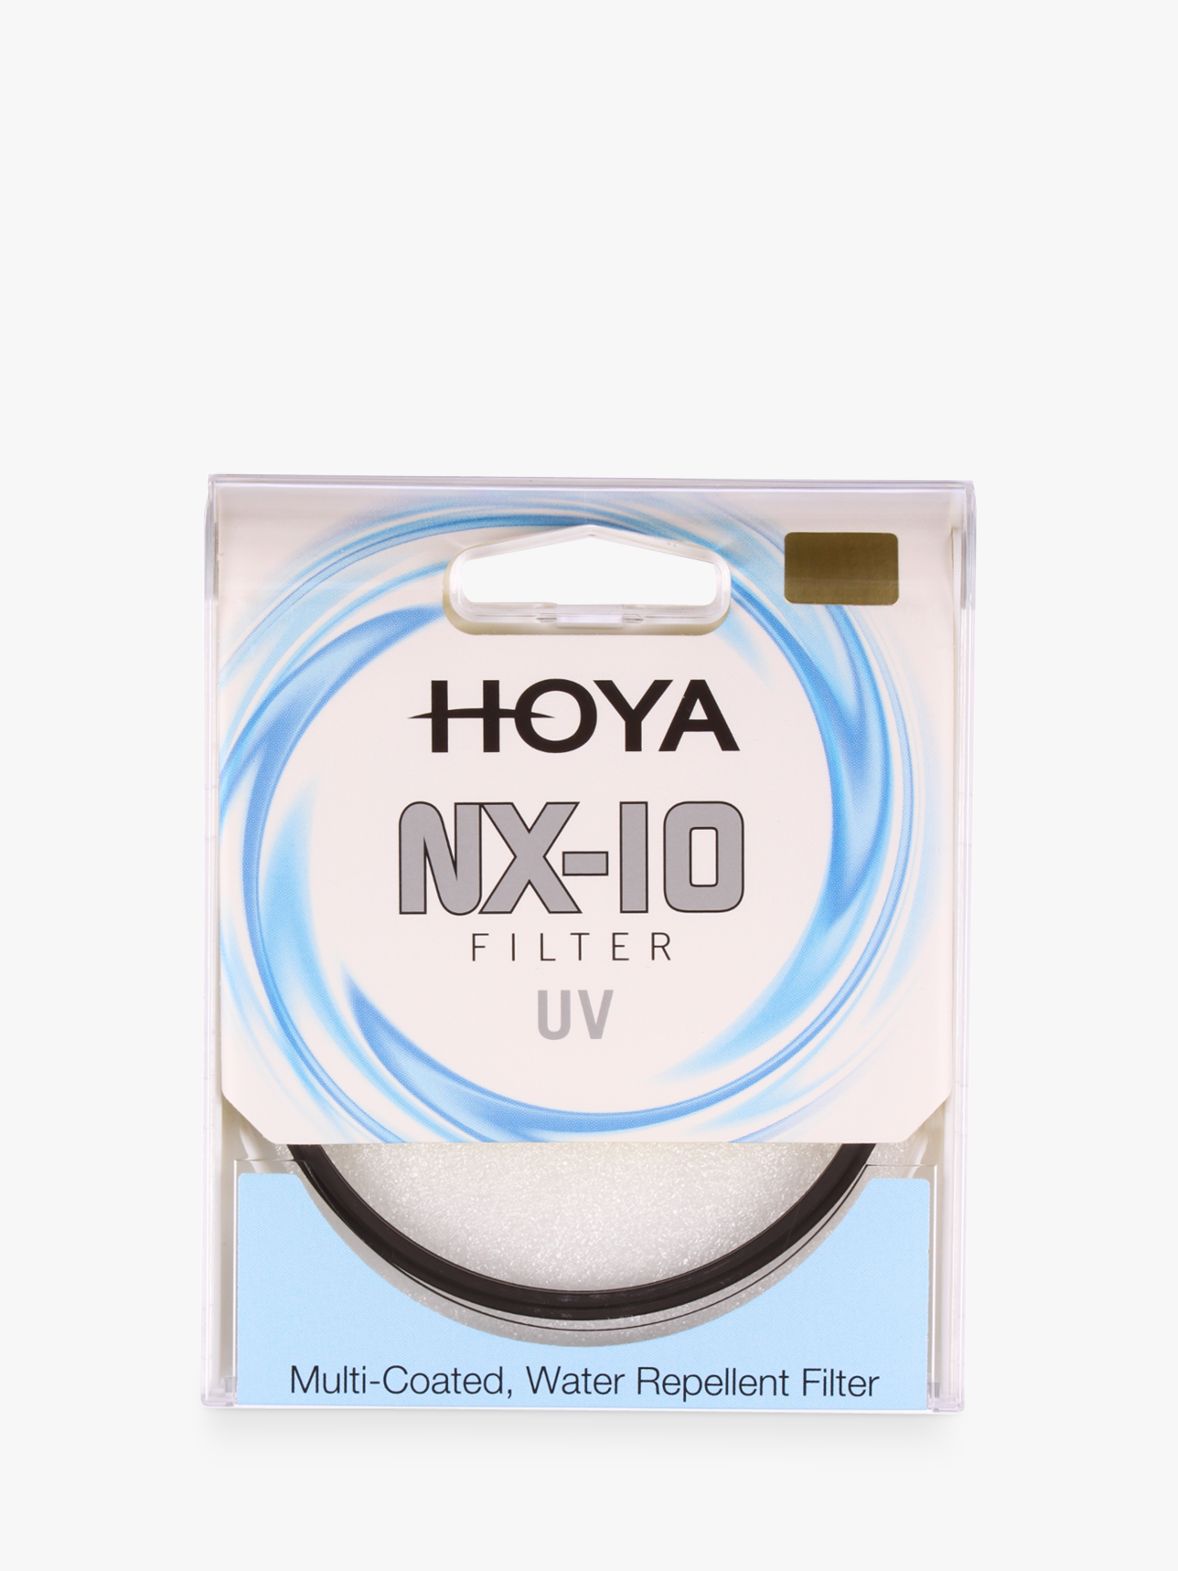 HOYA NX-10 UV Lens Filter, 67mm